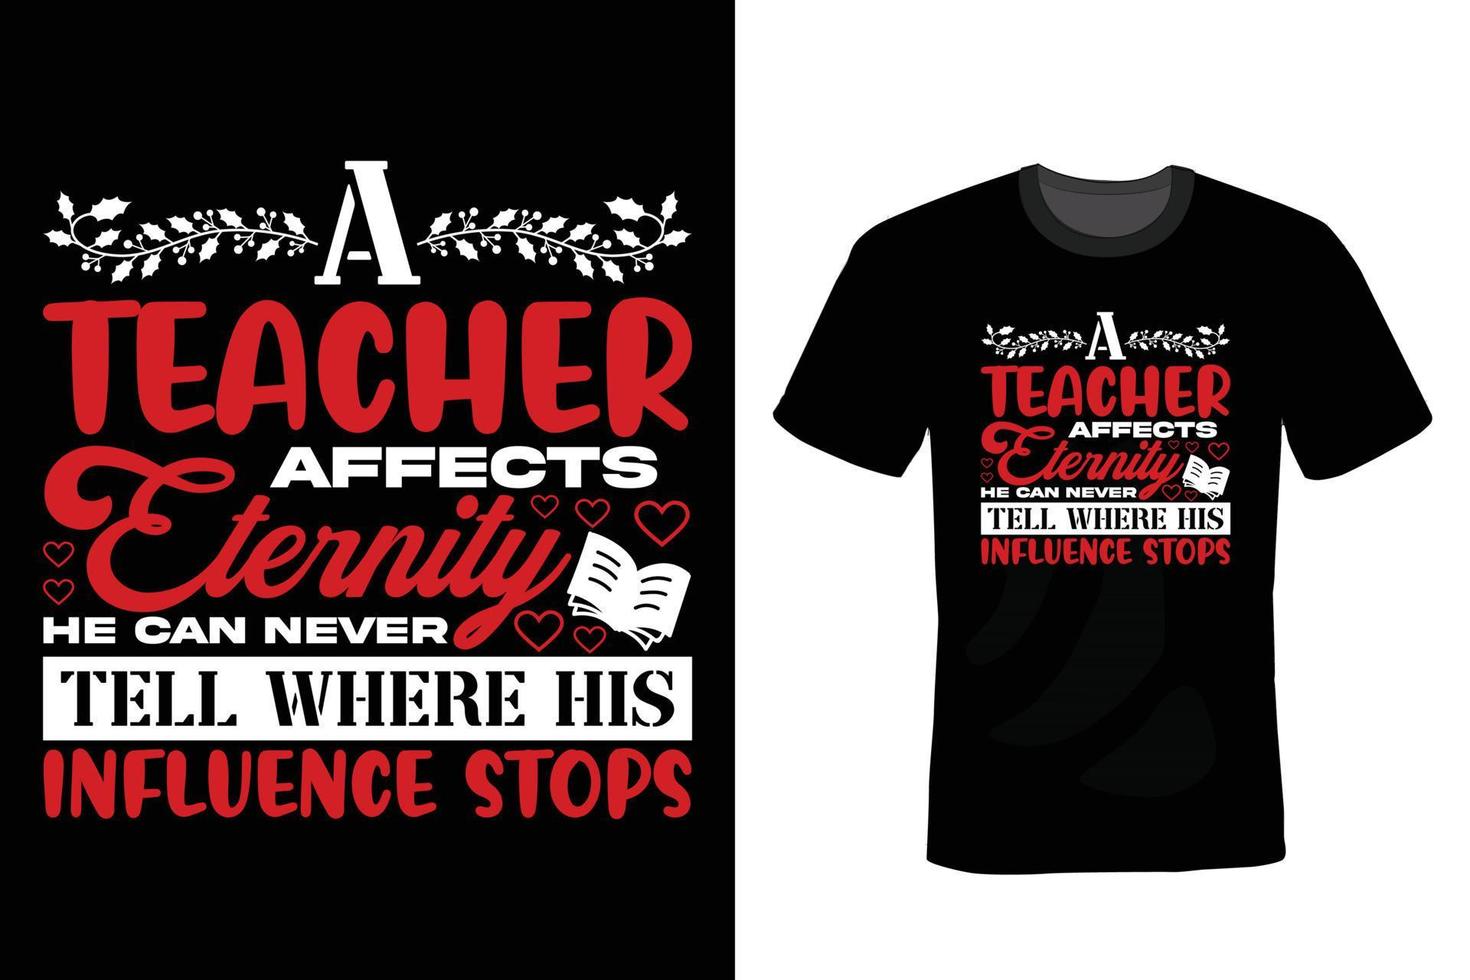 diseño de camiseta de profesor, vintage, tipografía vector